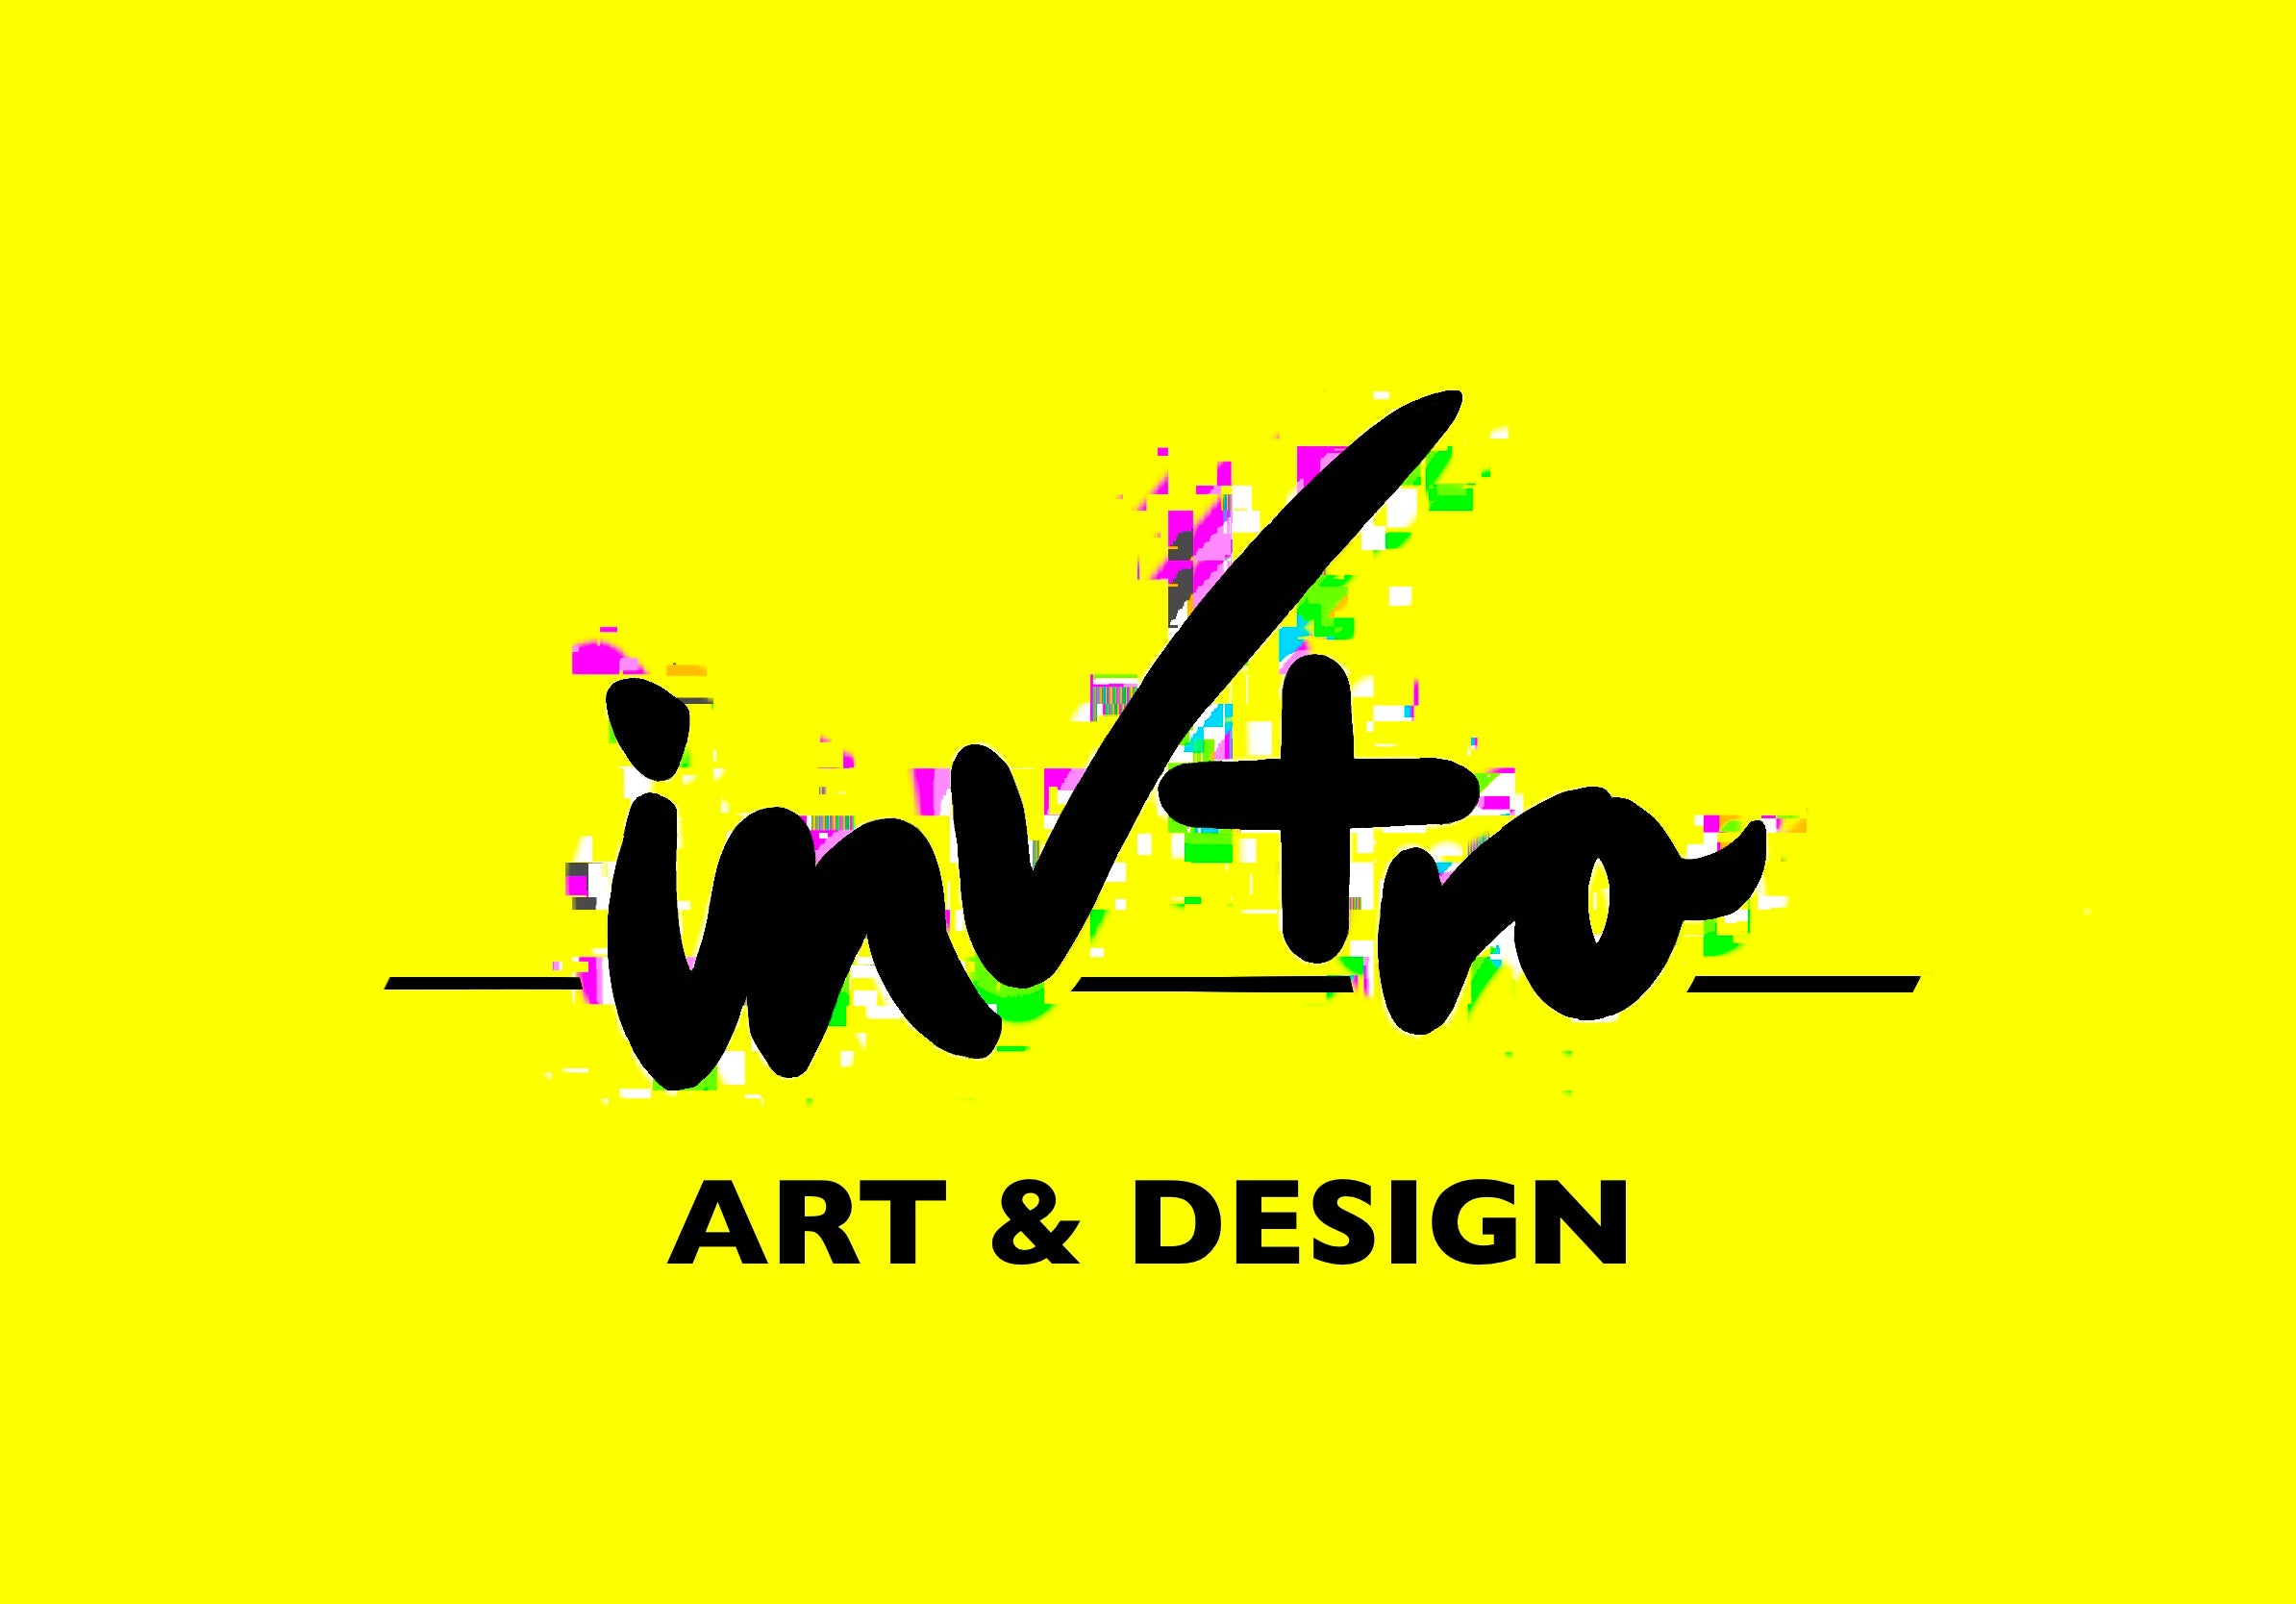 inVtro Art & Design